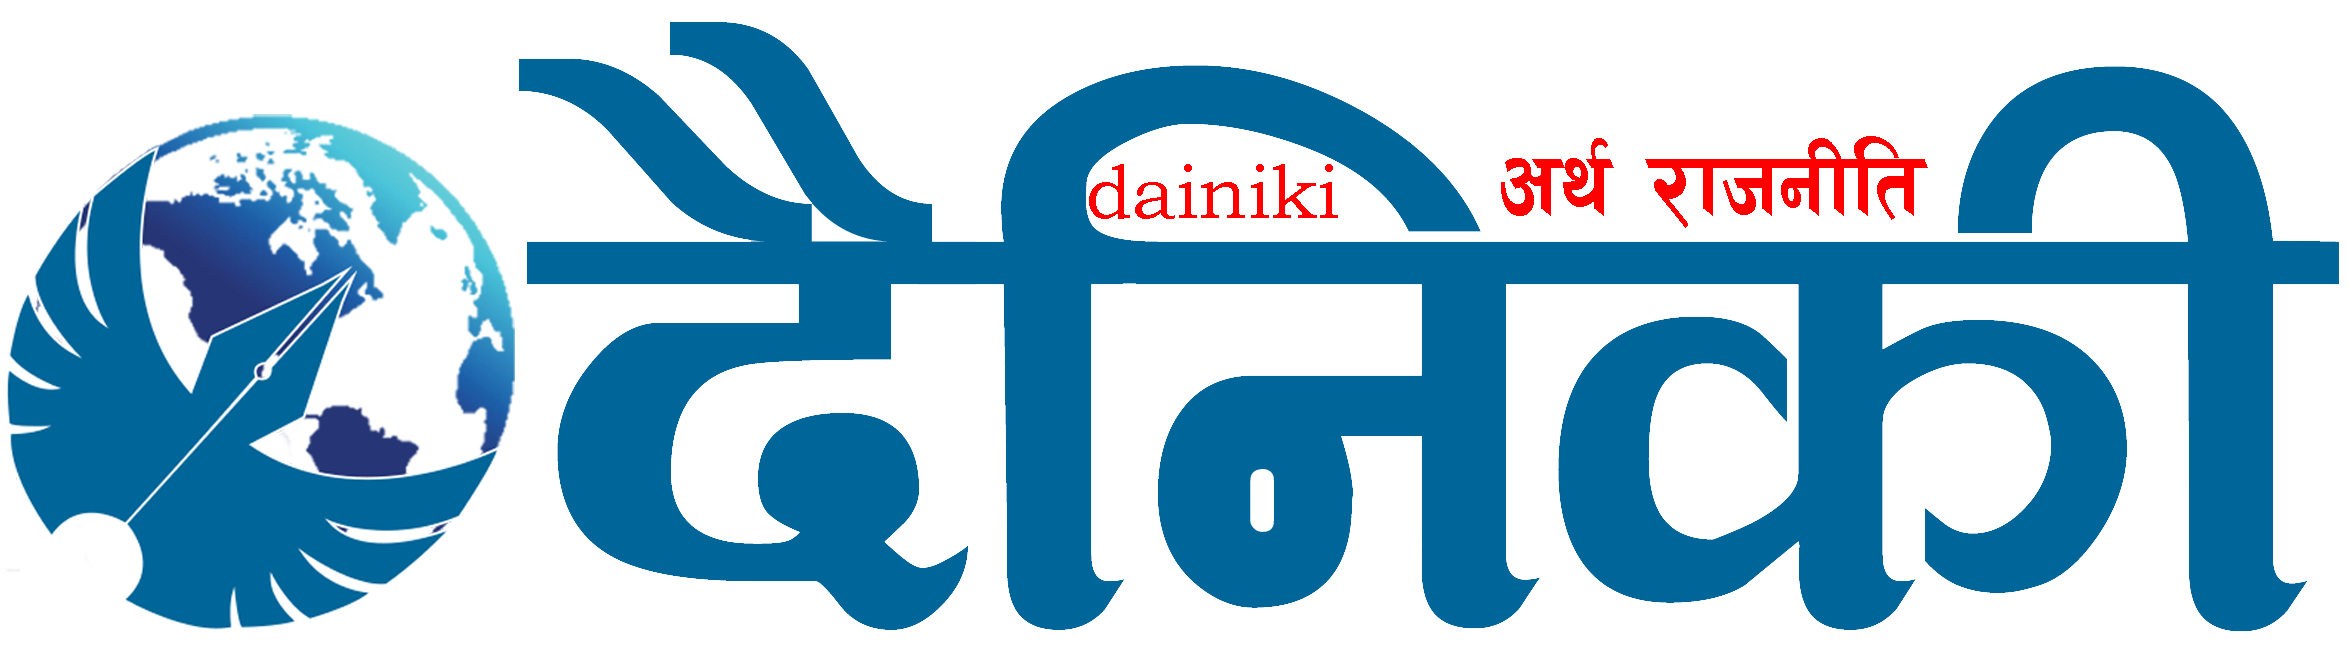 Dainiki